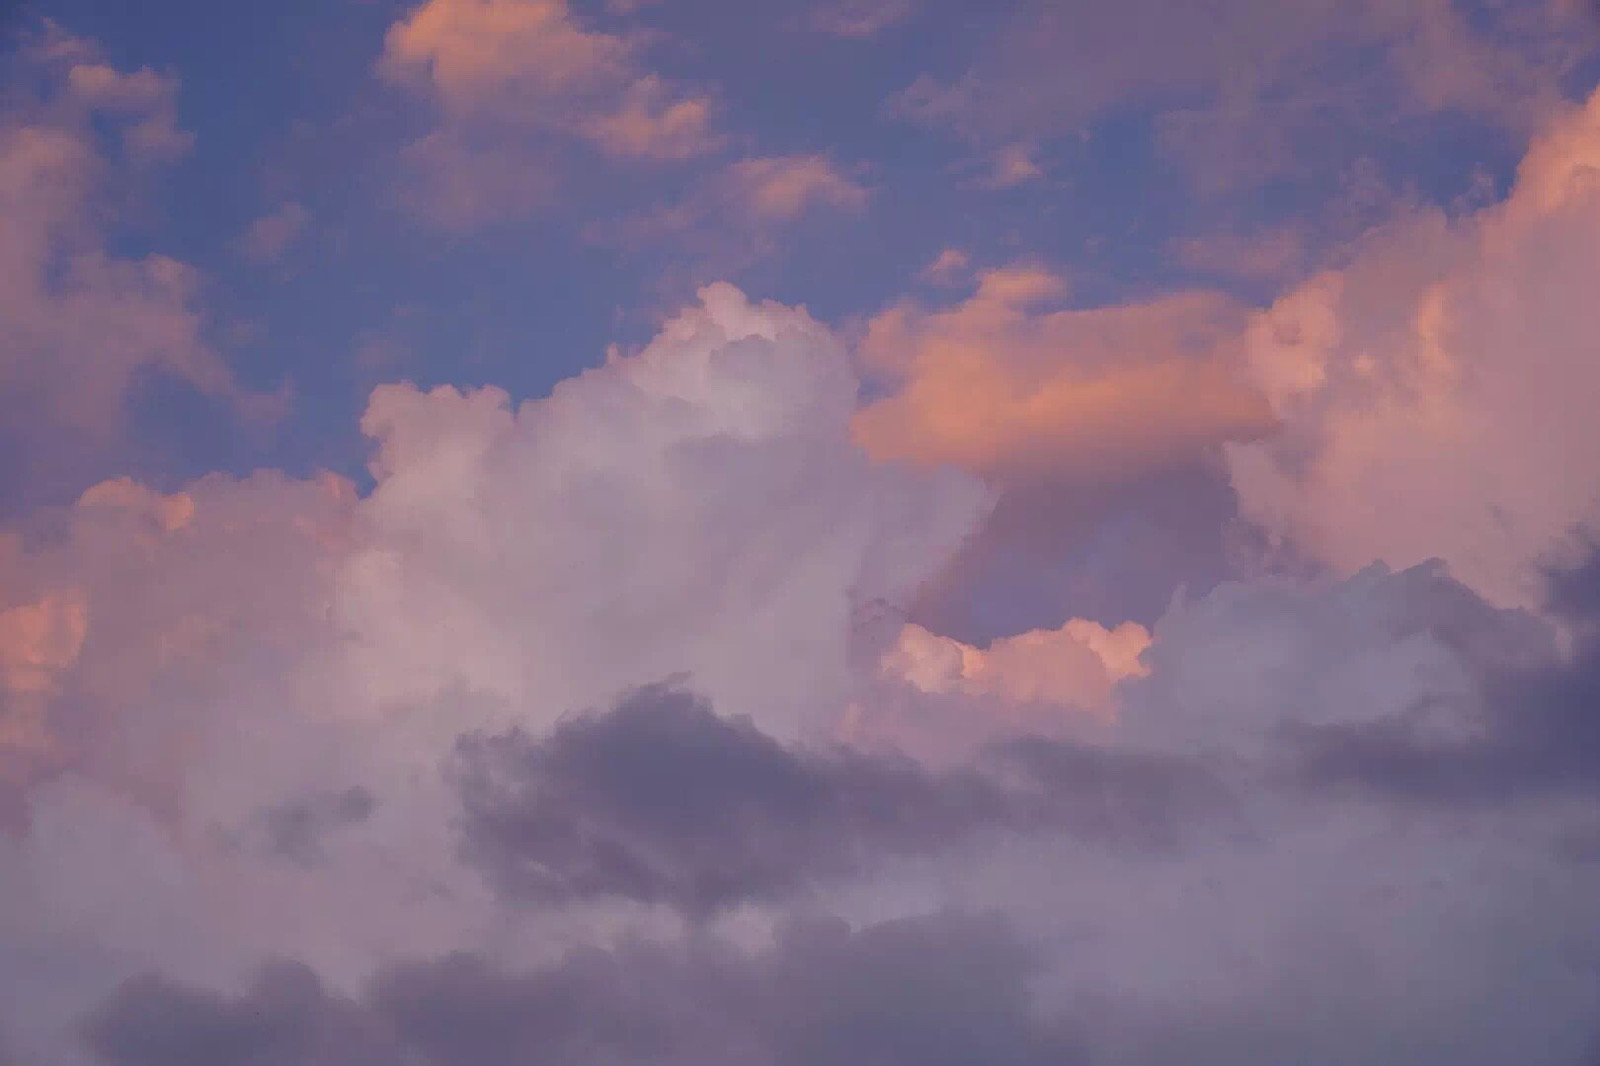 天边的云彩云朵图片(3) - 25H.NET壁纸库